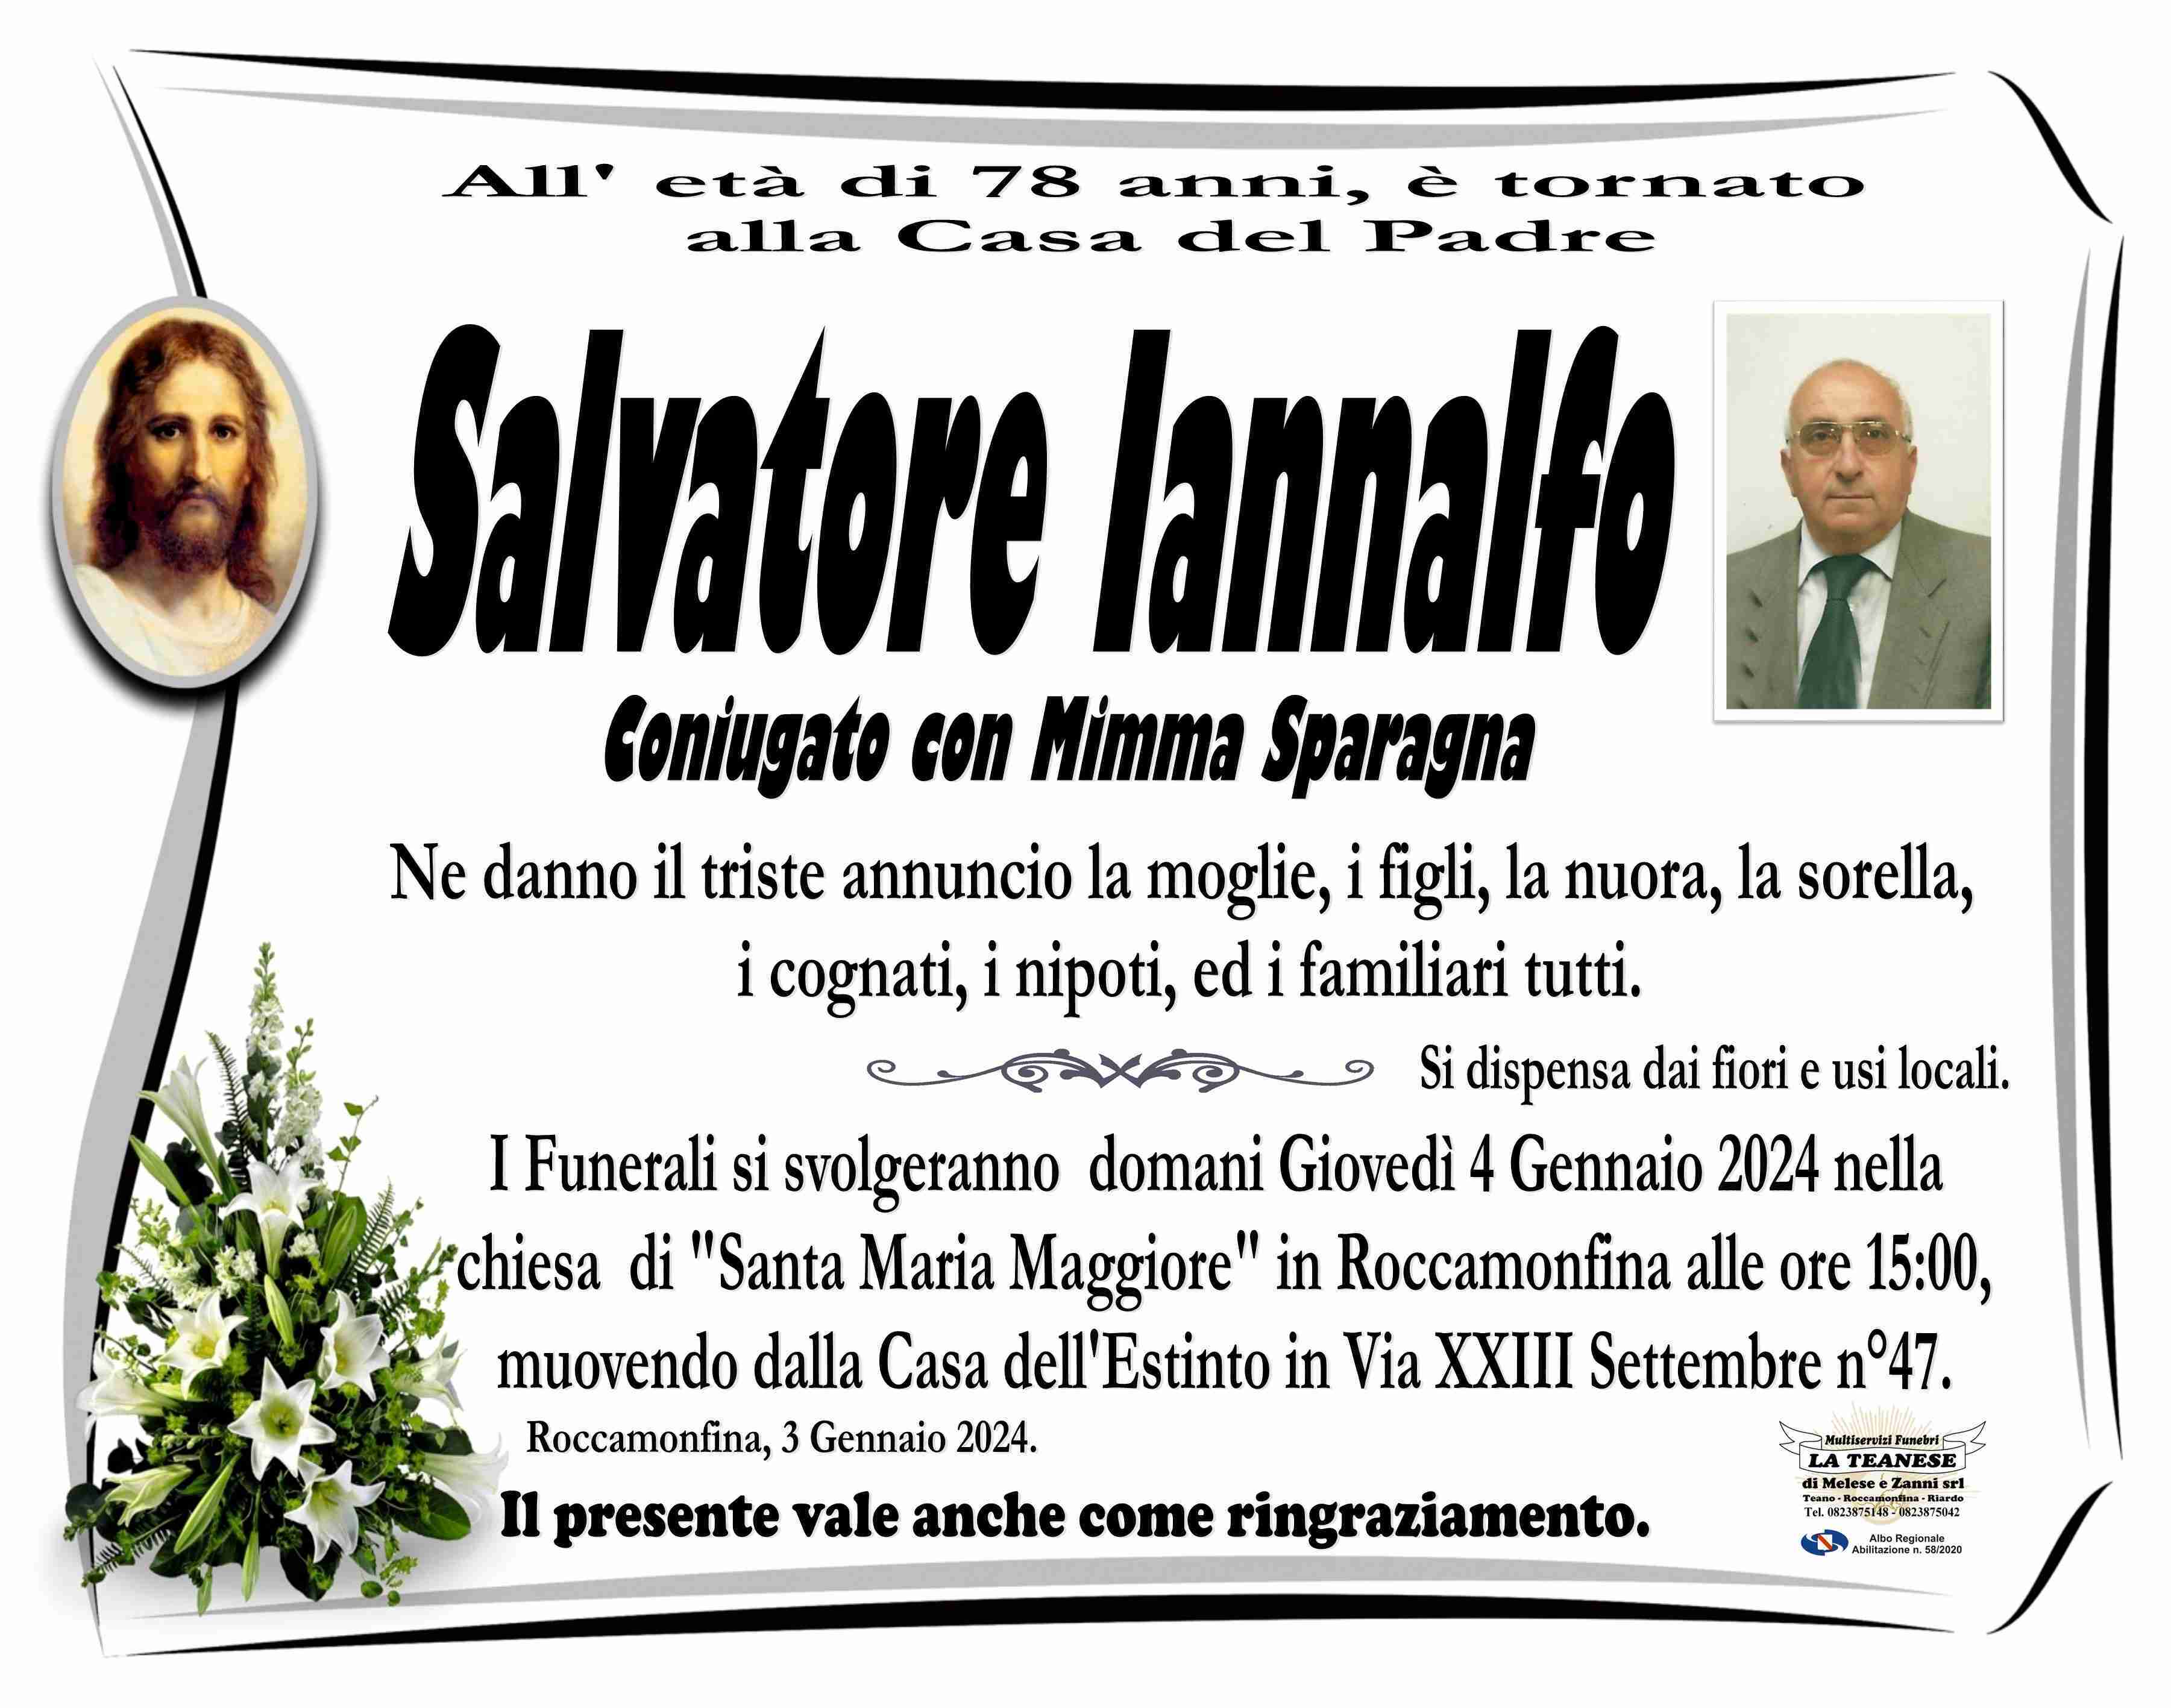 Salvatore Iannalfo